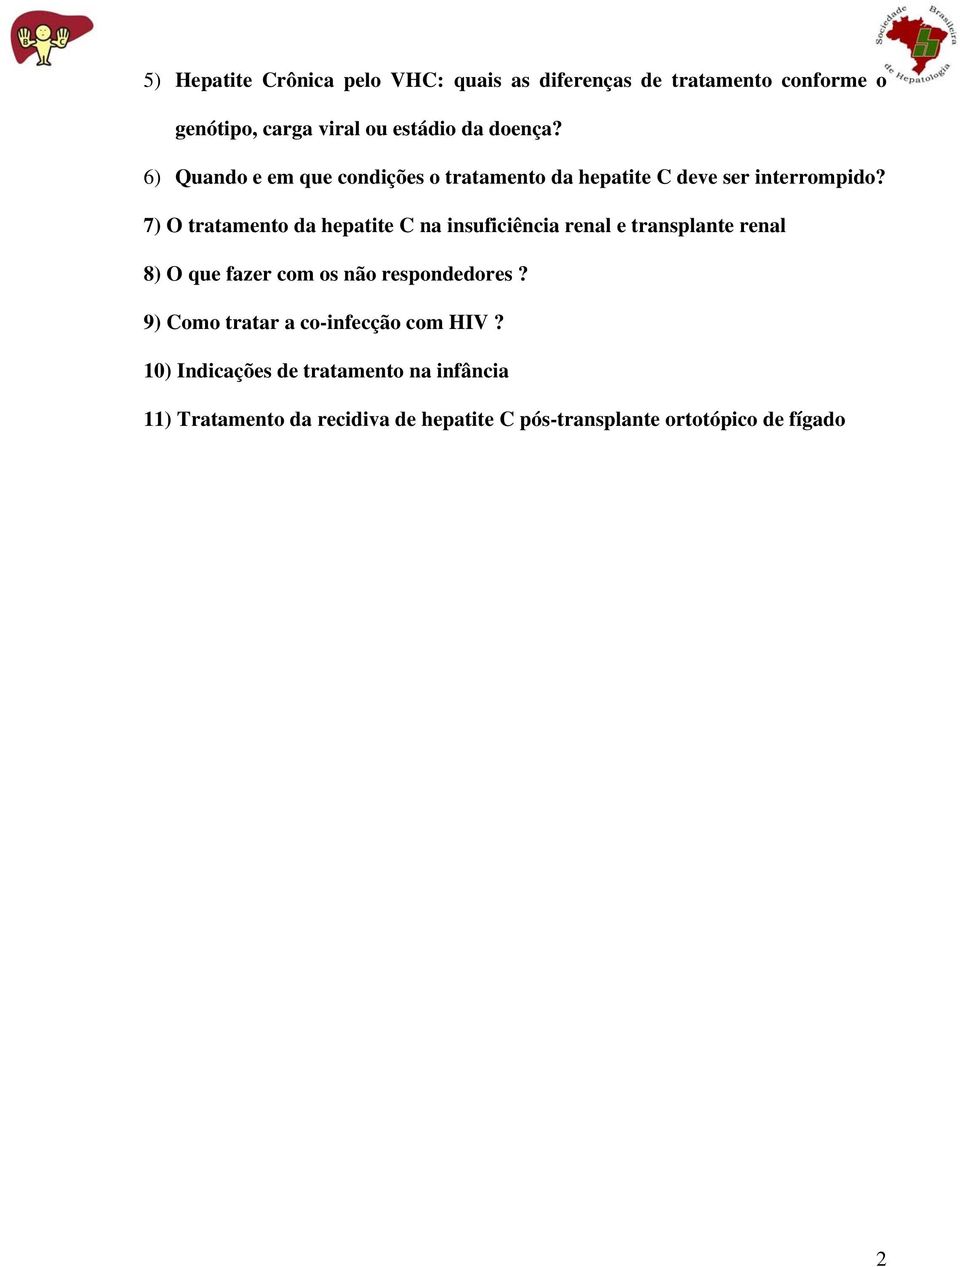 7) O tratamento da hepatite C na insuficiência renal e transplante renal 8) O que fazer com os não respondedores?